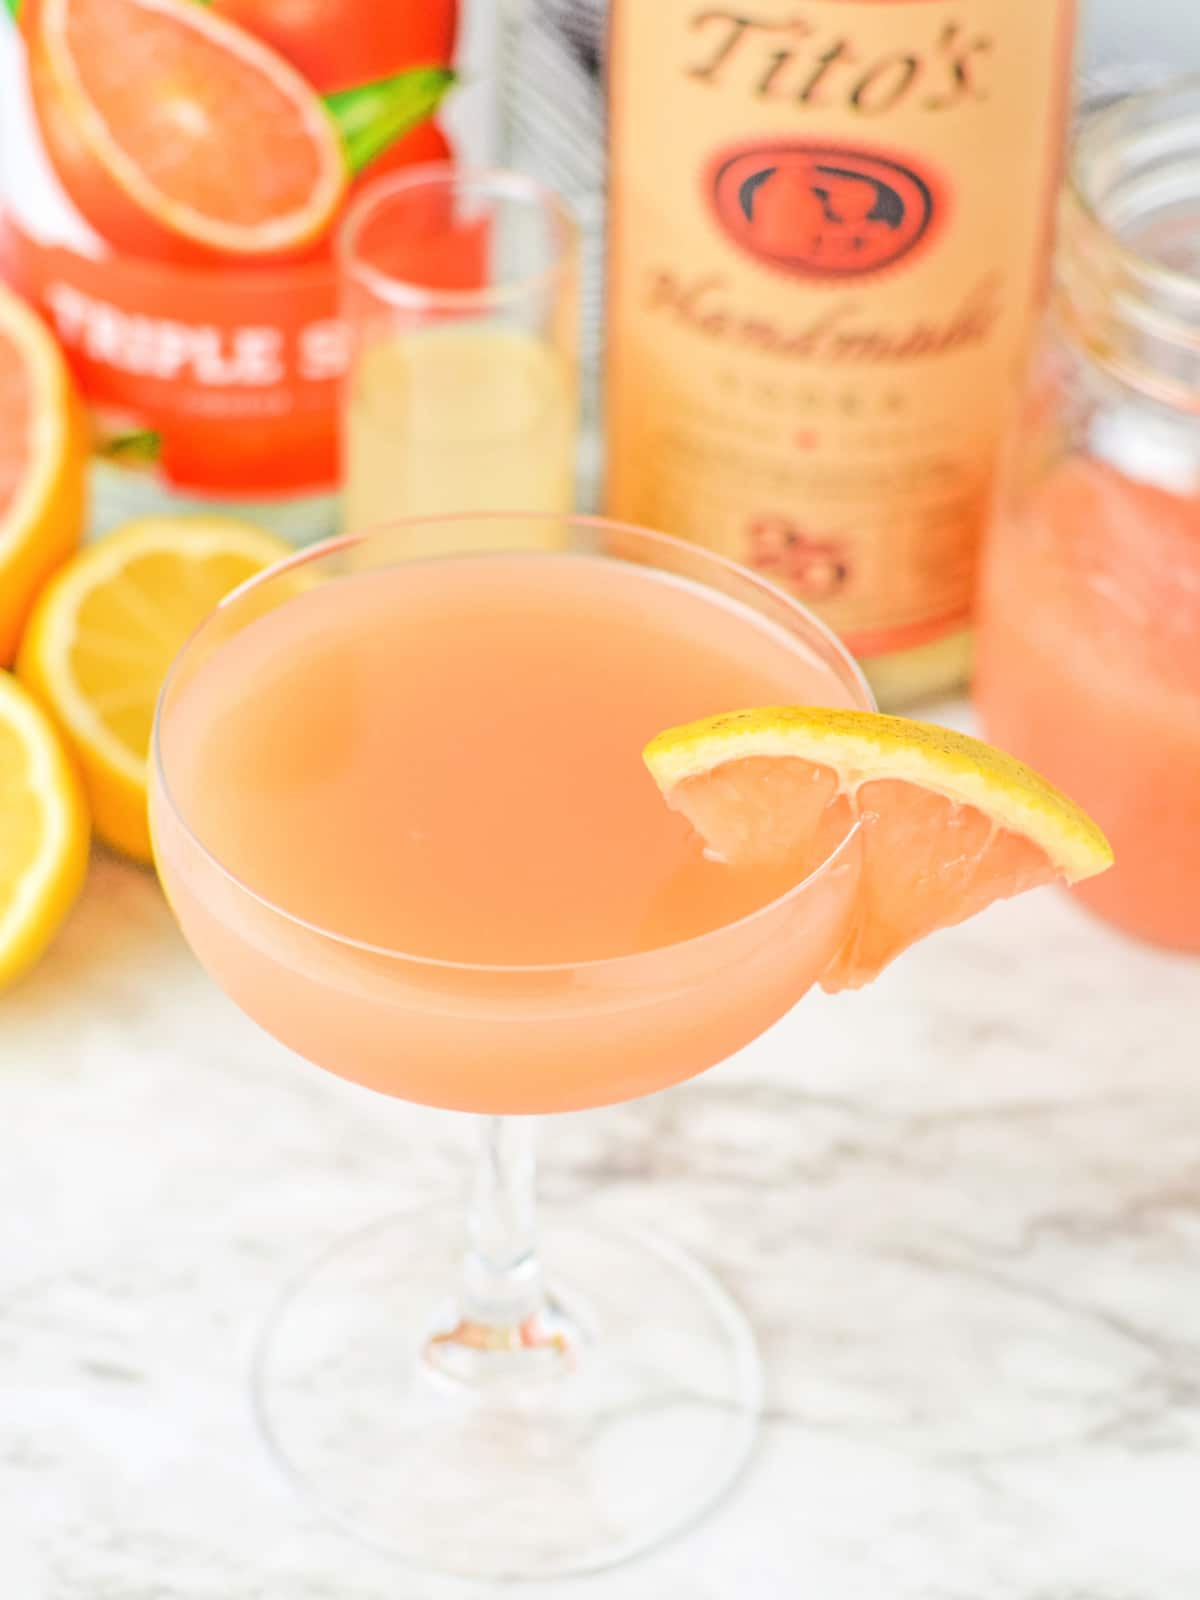 pour grapefruit martini into glass and enjoy